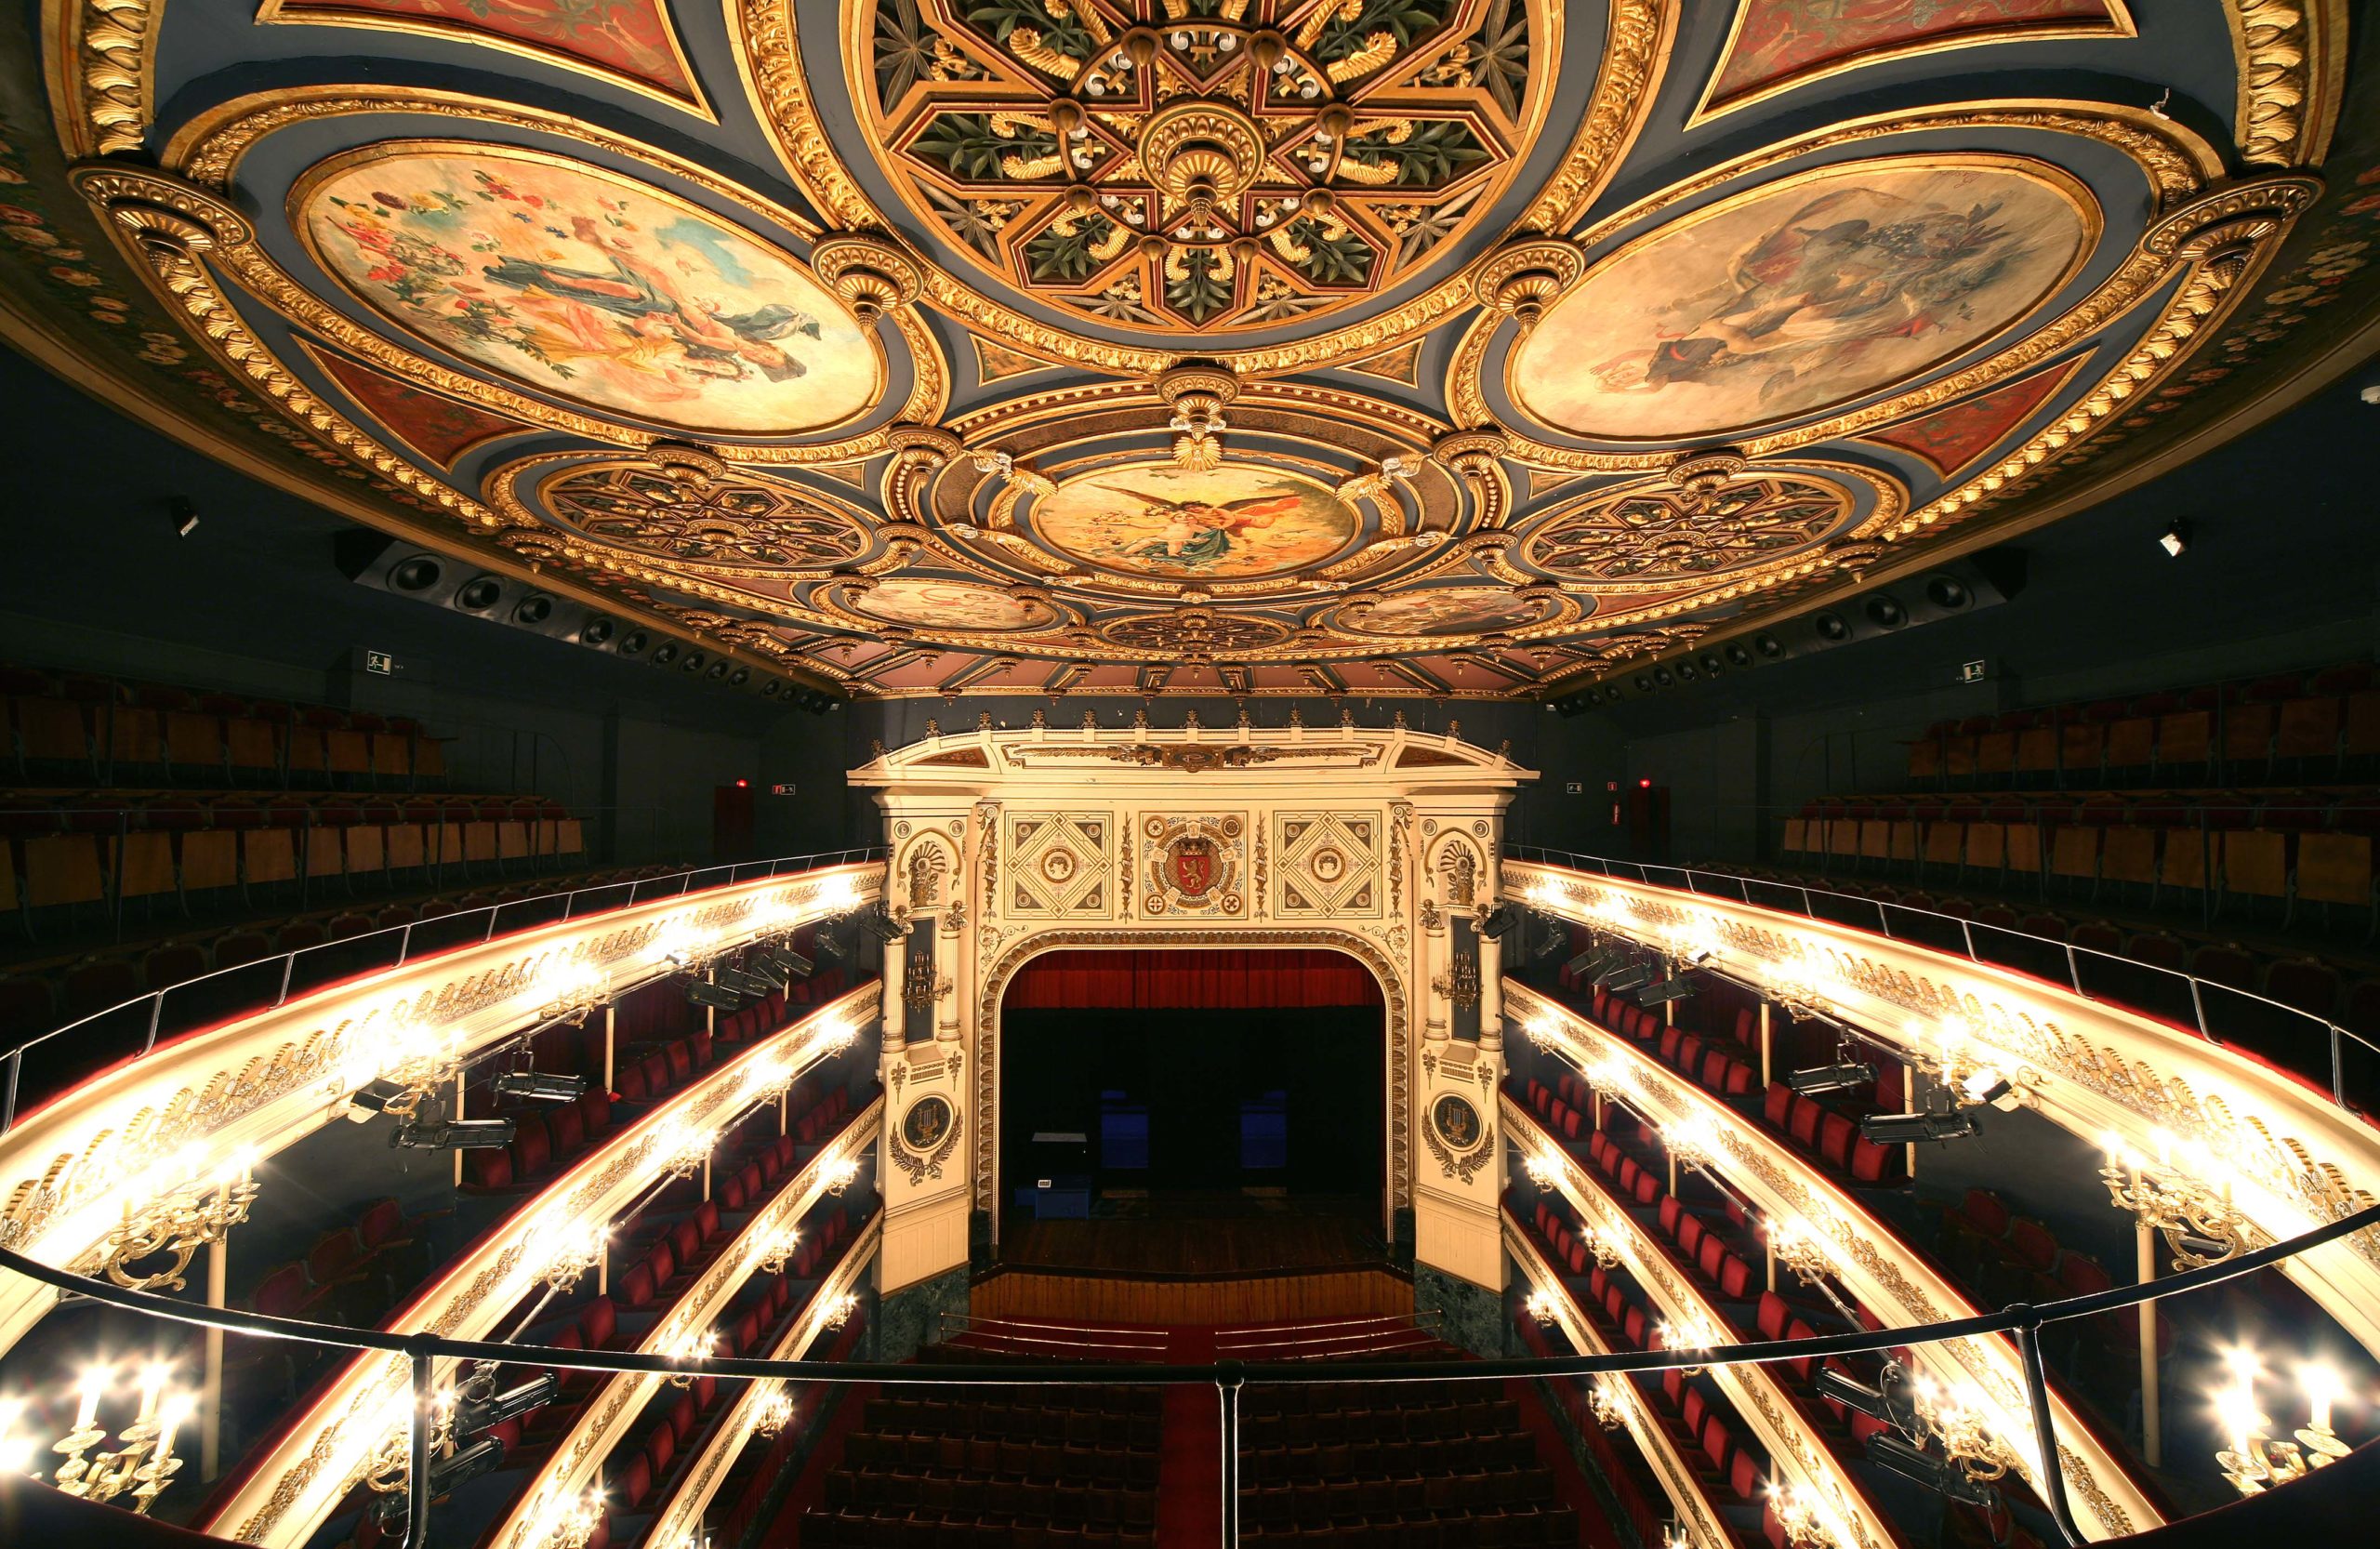 Comienza la función. Teatro Principal de Zaragoza.